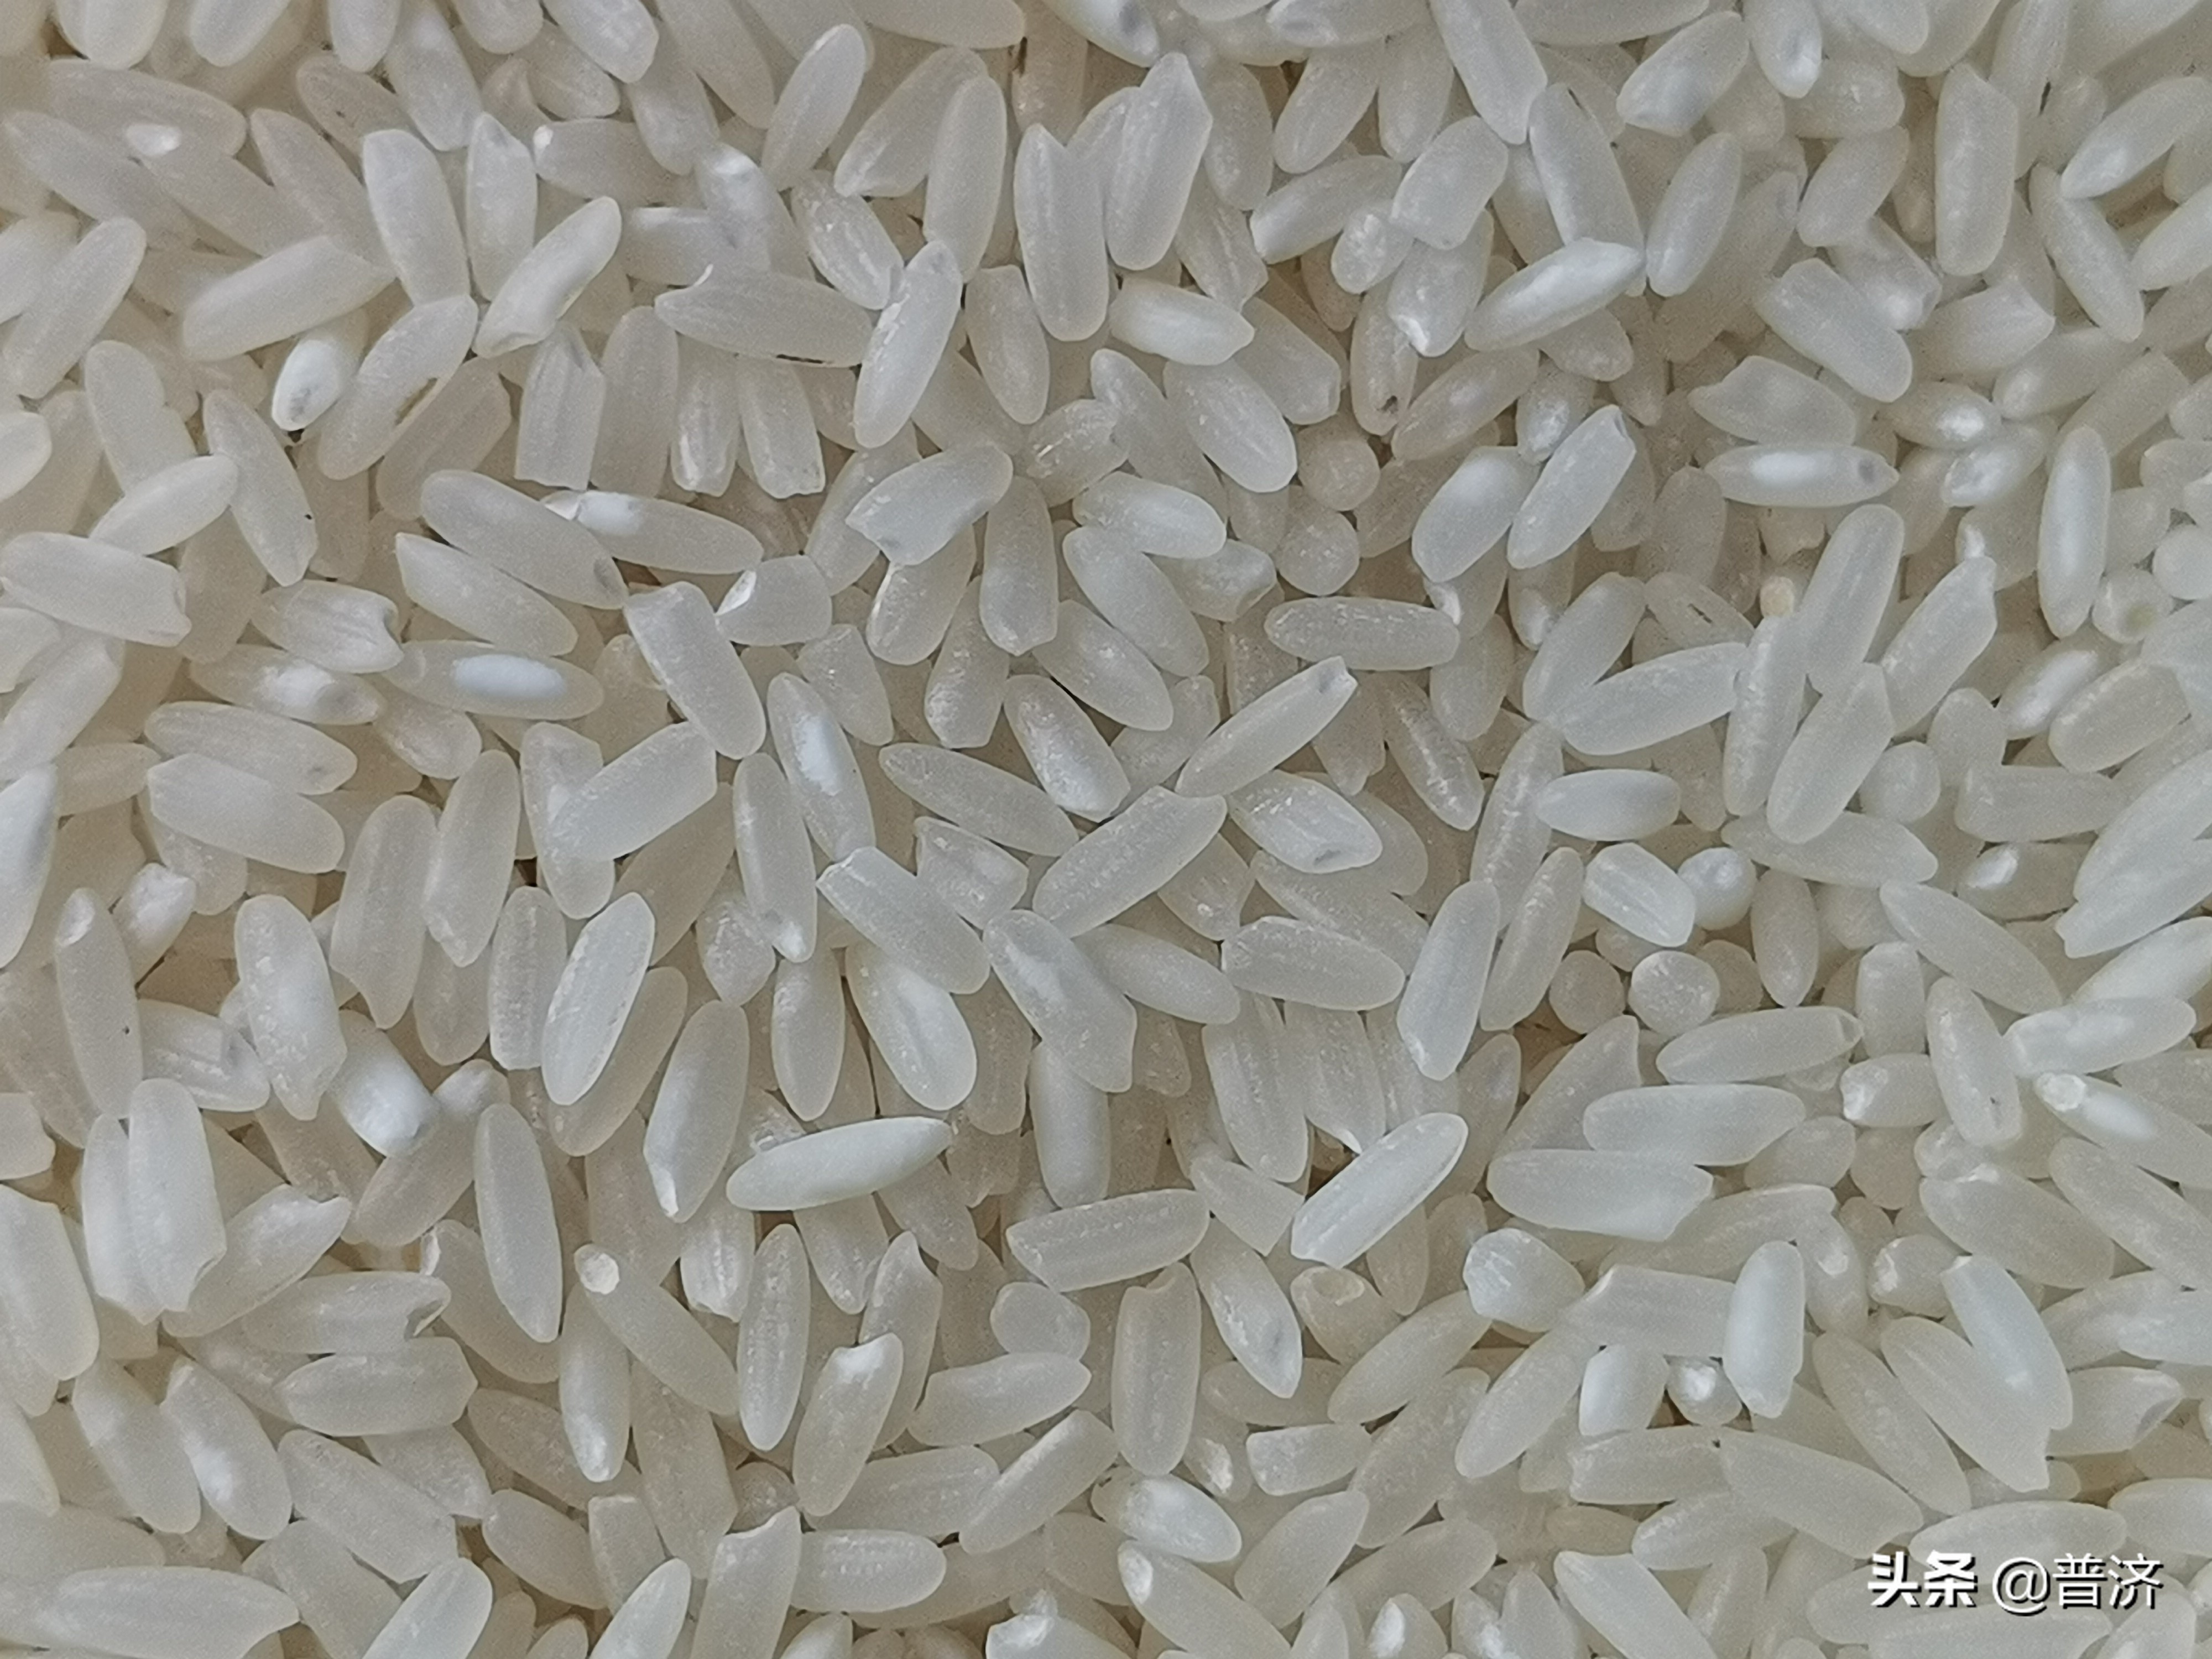 五常大米没真货，十家就有九家假？米还是那个米，只是被拼配了